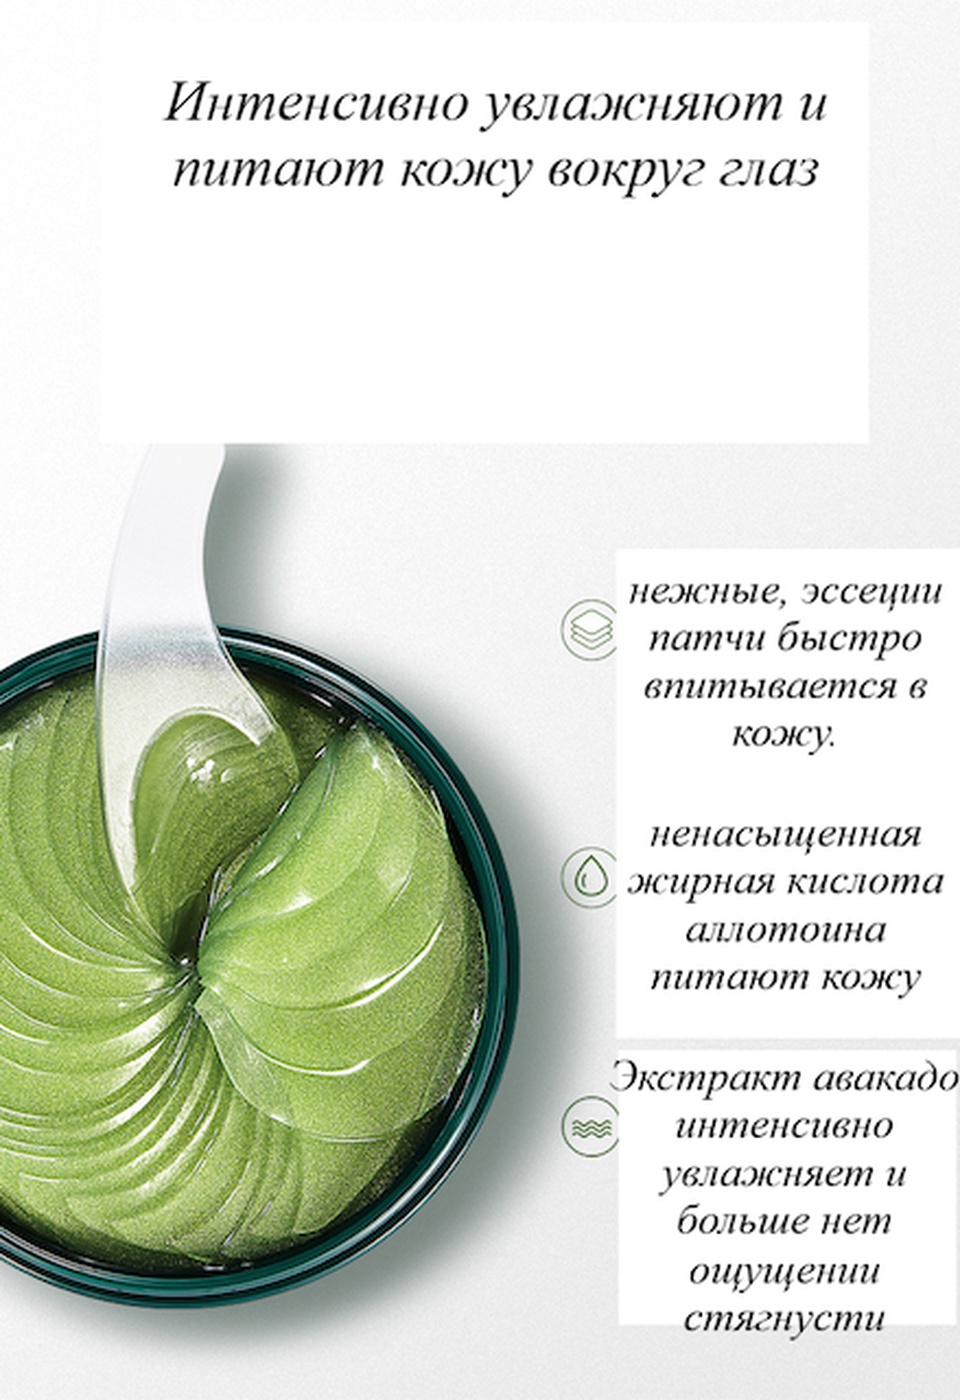 Гидрогелевые патчи с экстрактом авокадо и маслом ши - 250 ₽, заказать онлайн.